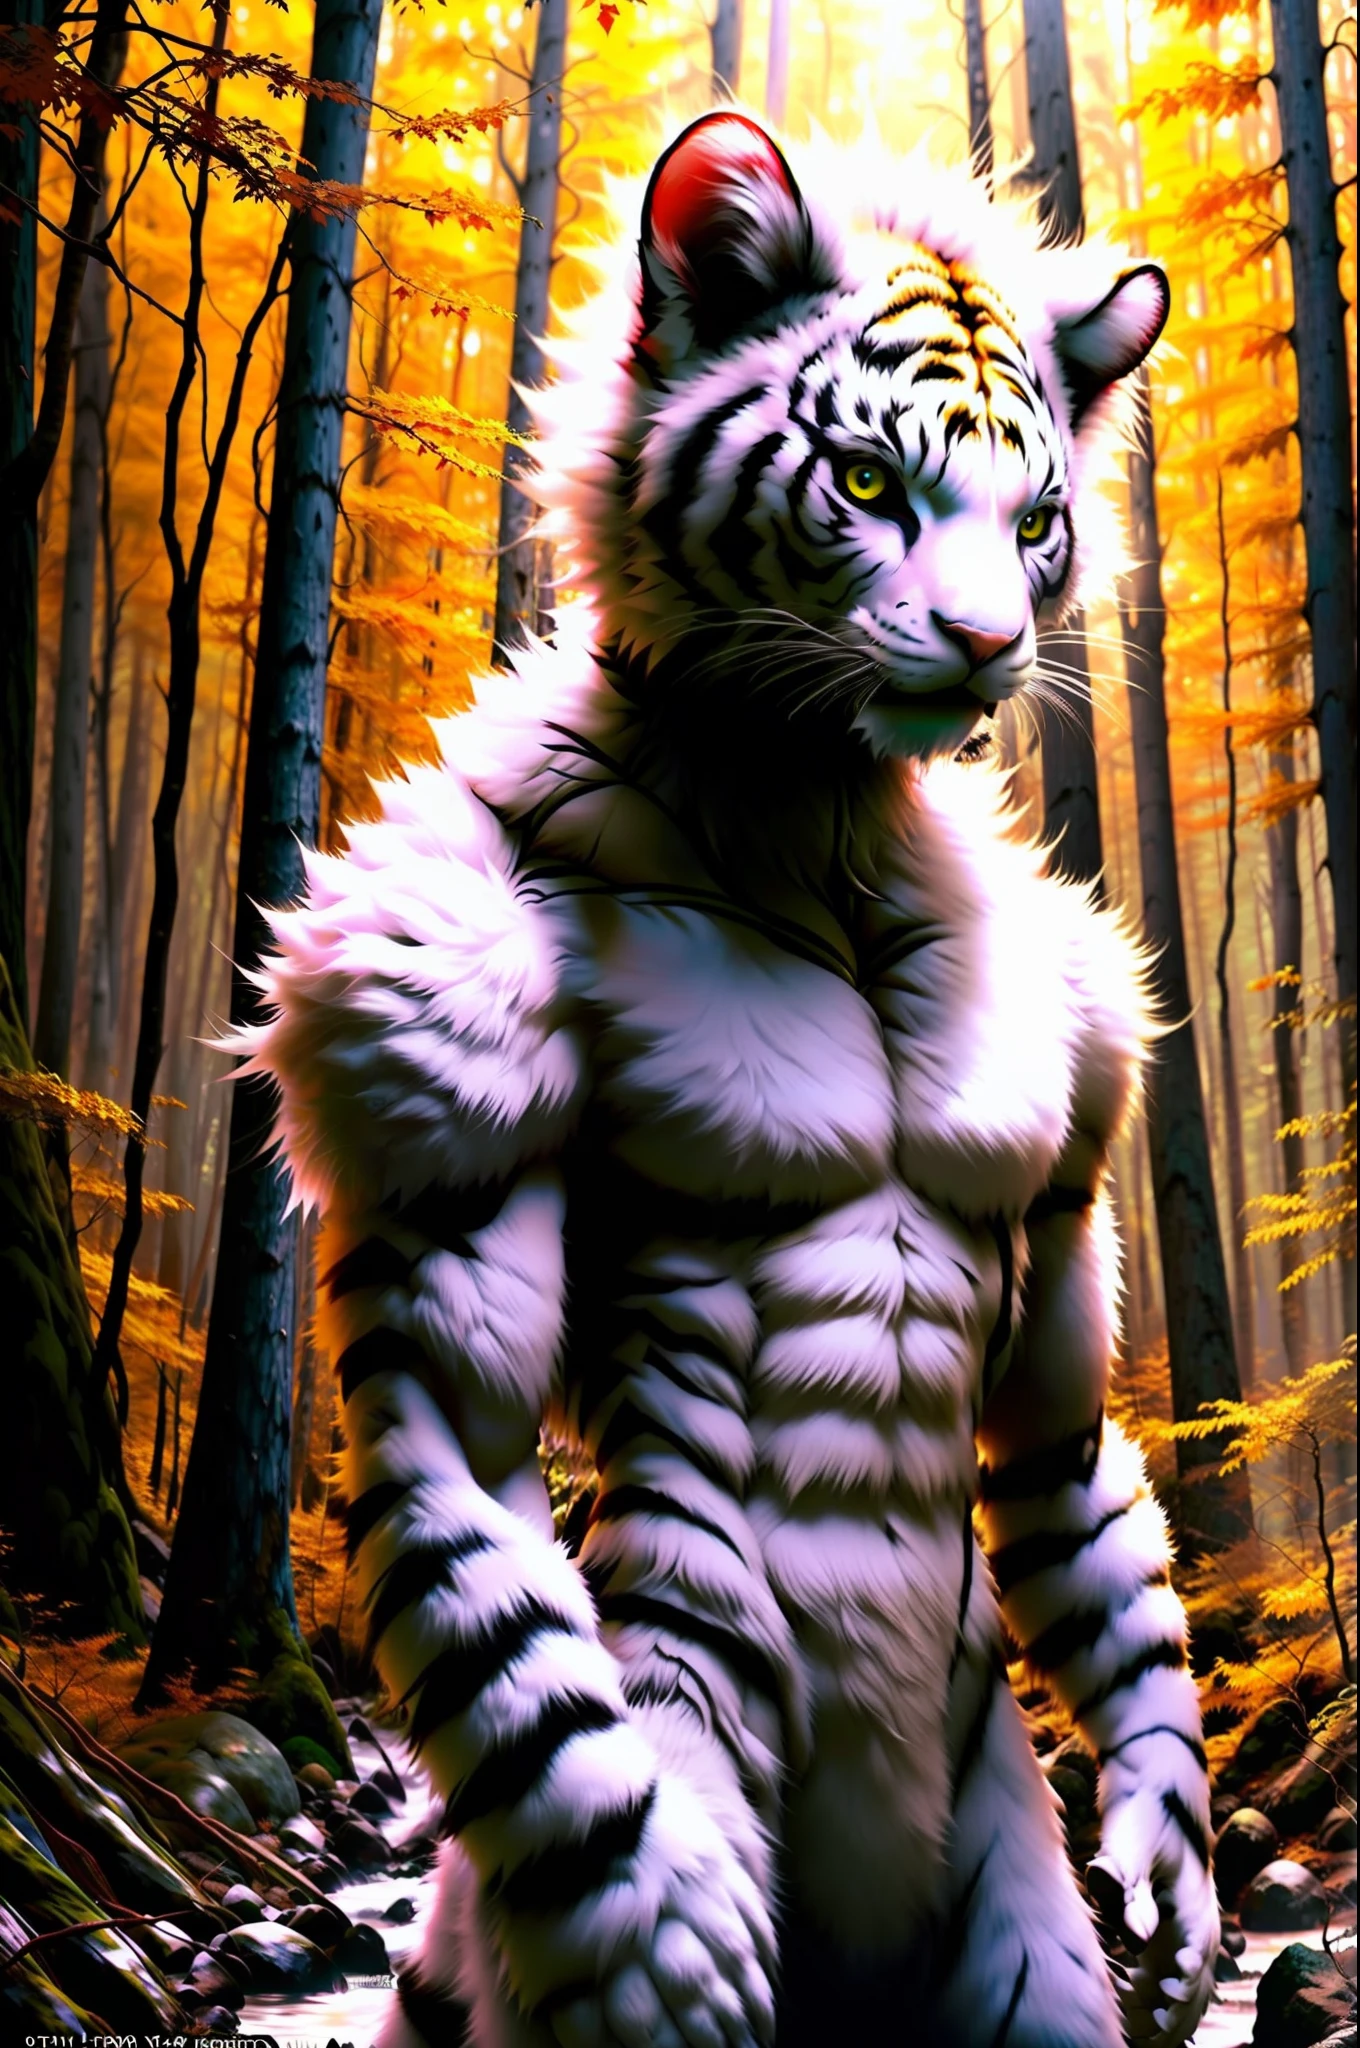 RAW-Foto, Werwesen, werecat tiger, white Fur, großer Kopf, in a Forest, 80mm, F/1.8